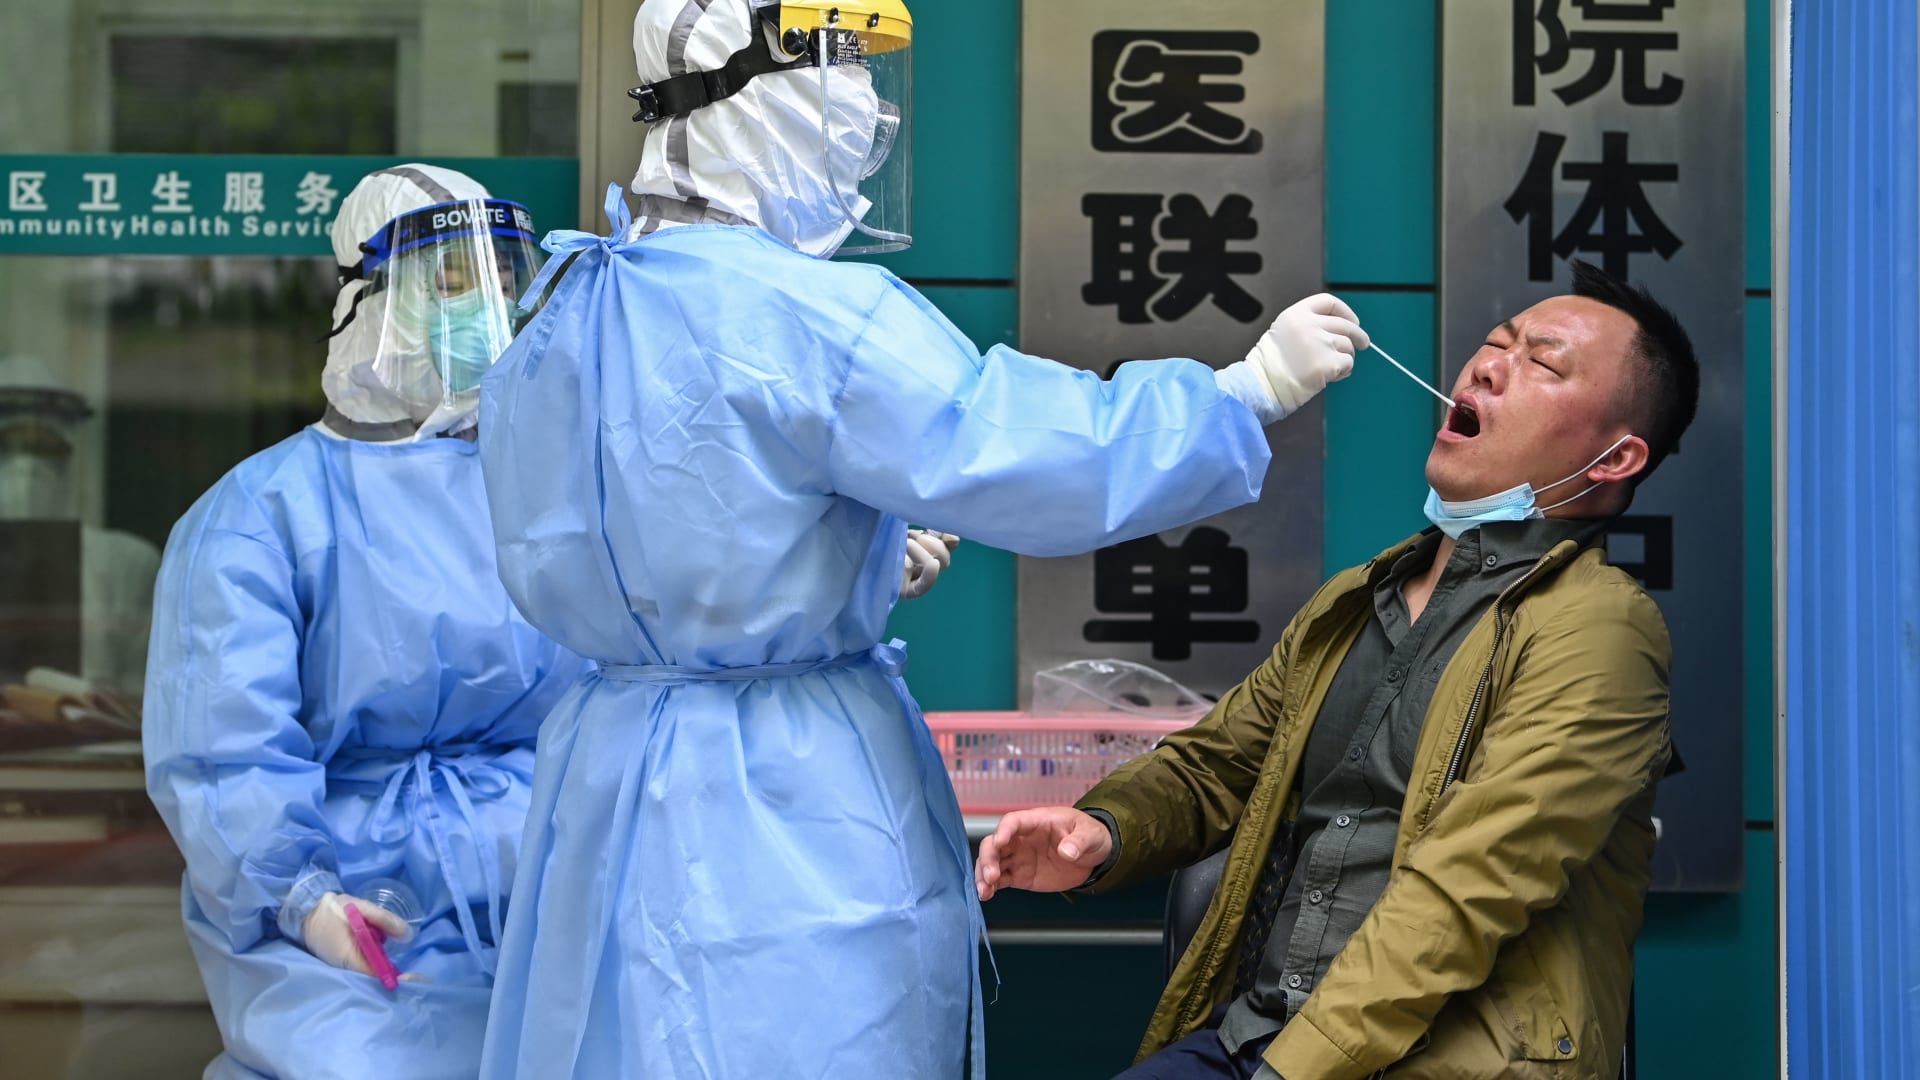 الصين: لا دليل على صحة ادعاء "تسرب" فيروس كورونا من مختبراتنا - CNN Arabic